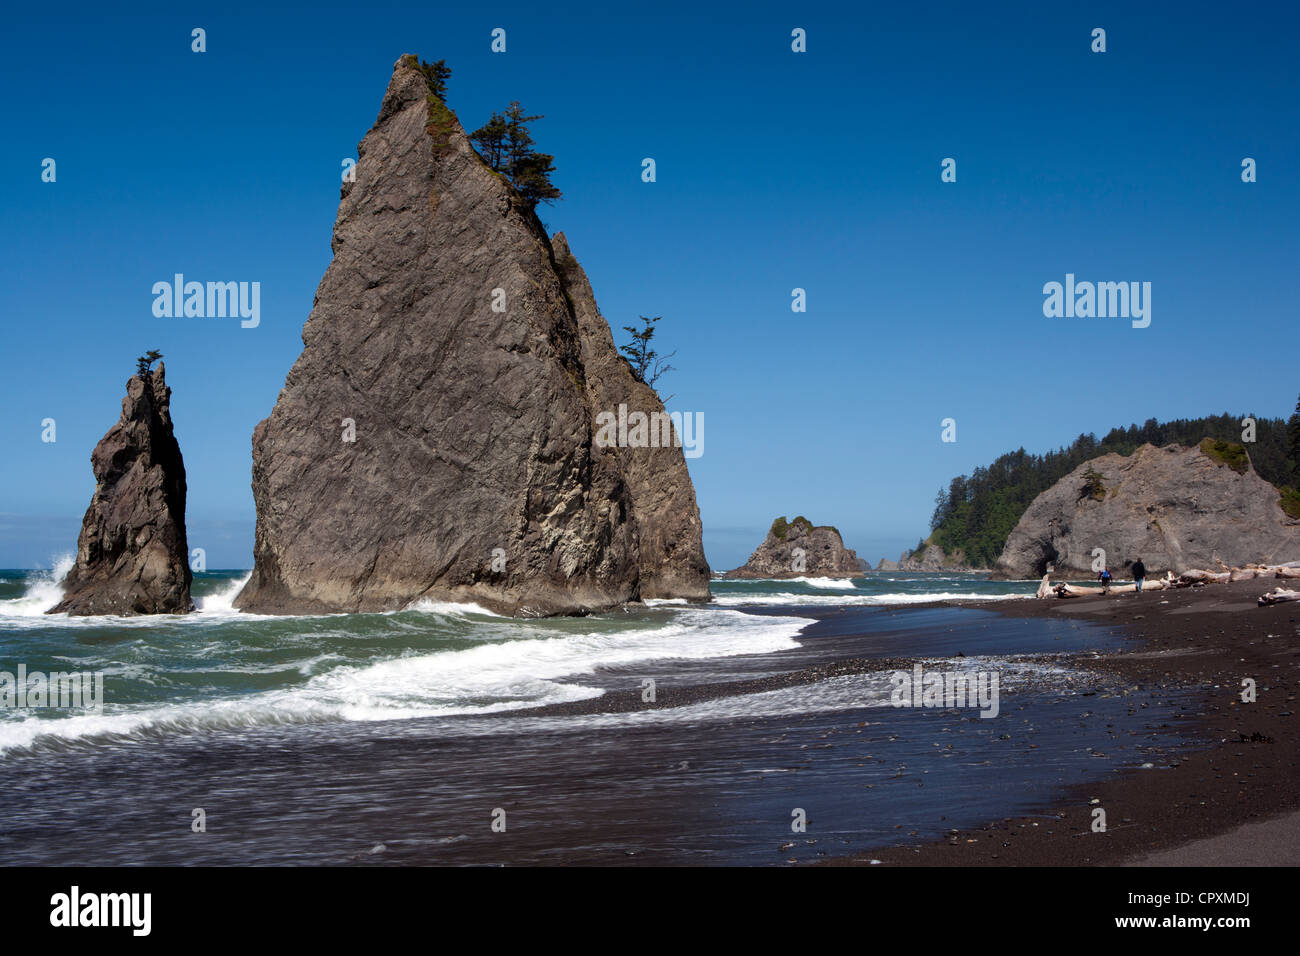 Rialto Beach, near La Push, Washington USA Stock Photo